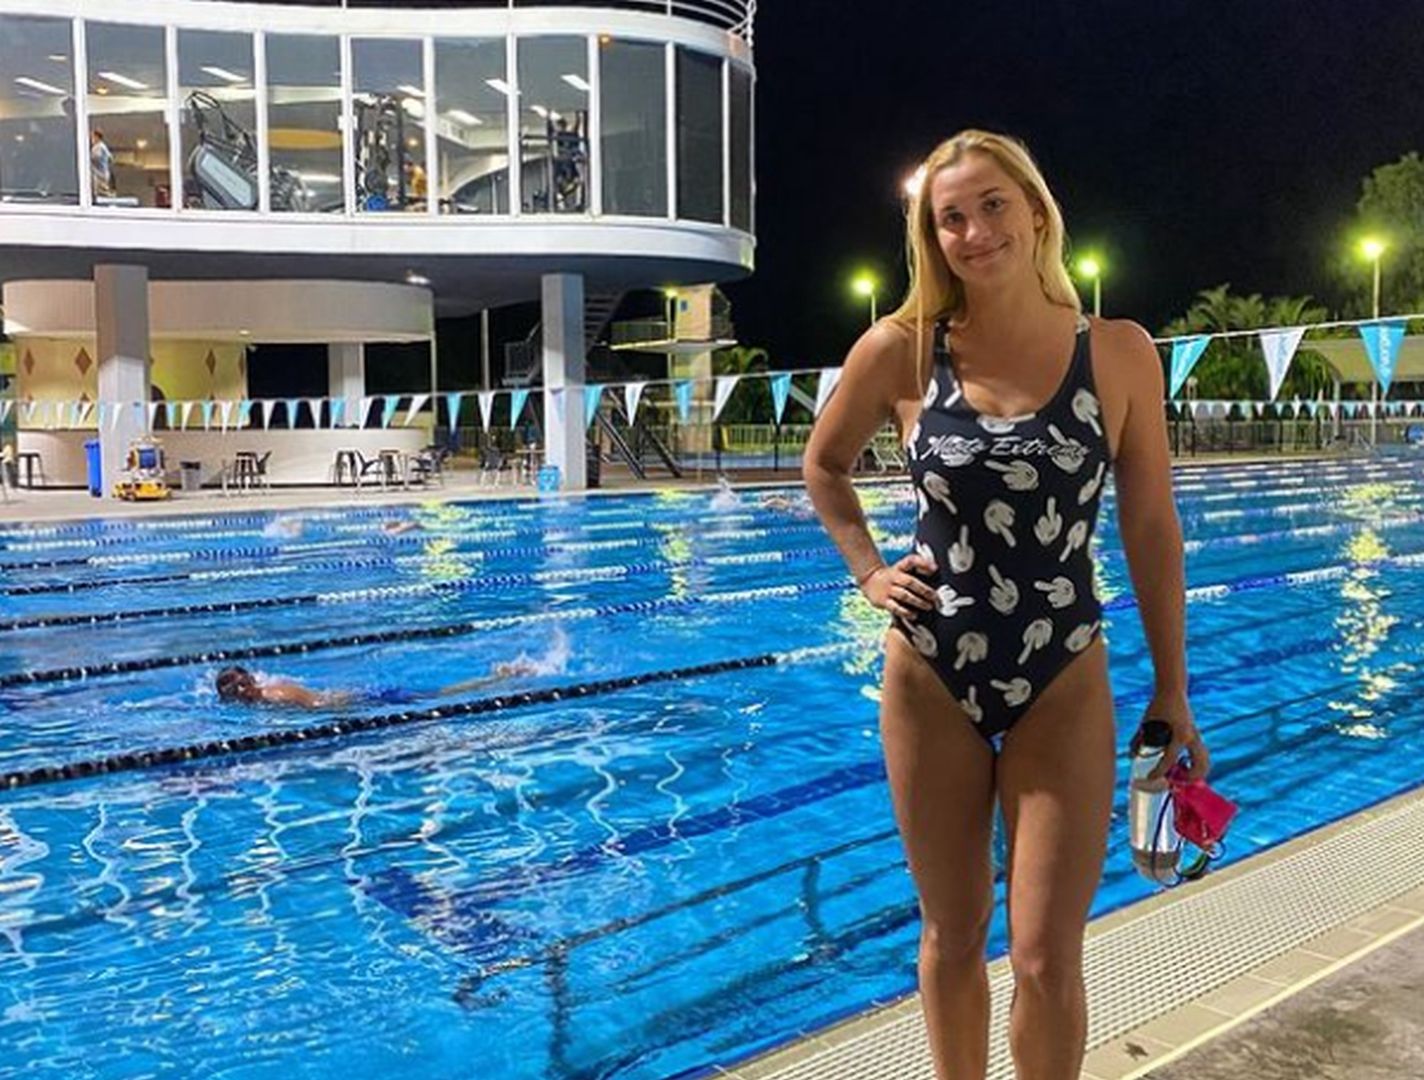 Znana pływaczka zszokowała świat, nie wystąpi na igrzyskach olimpijskich. "Lekcja dla zboczeńców"